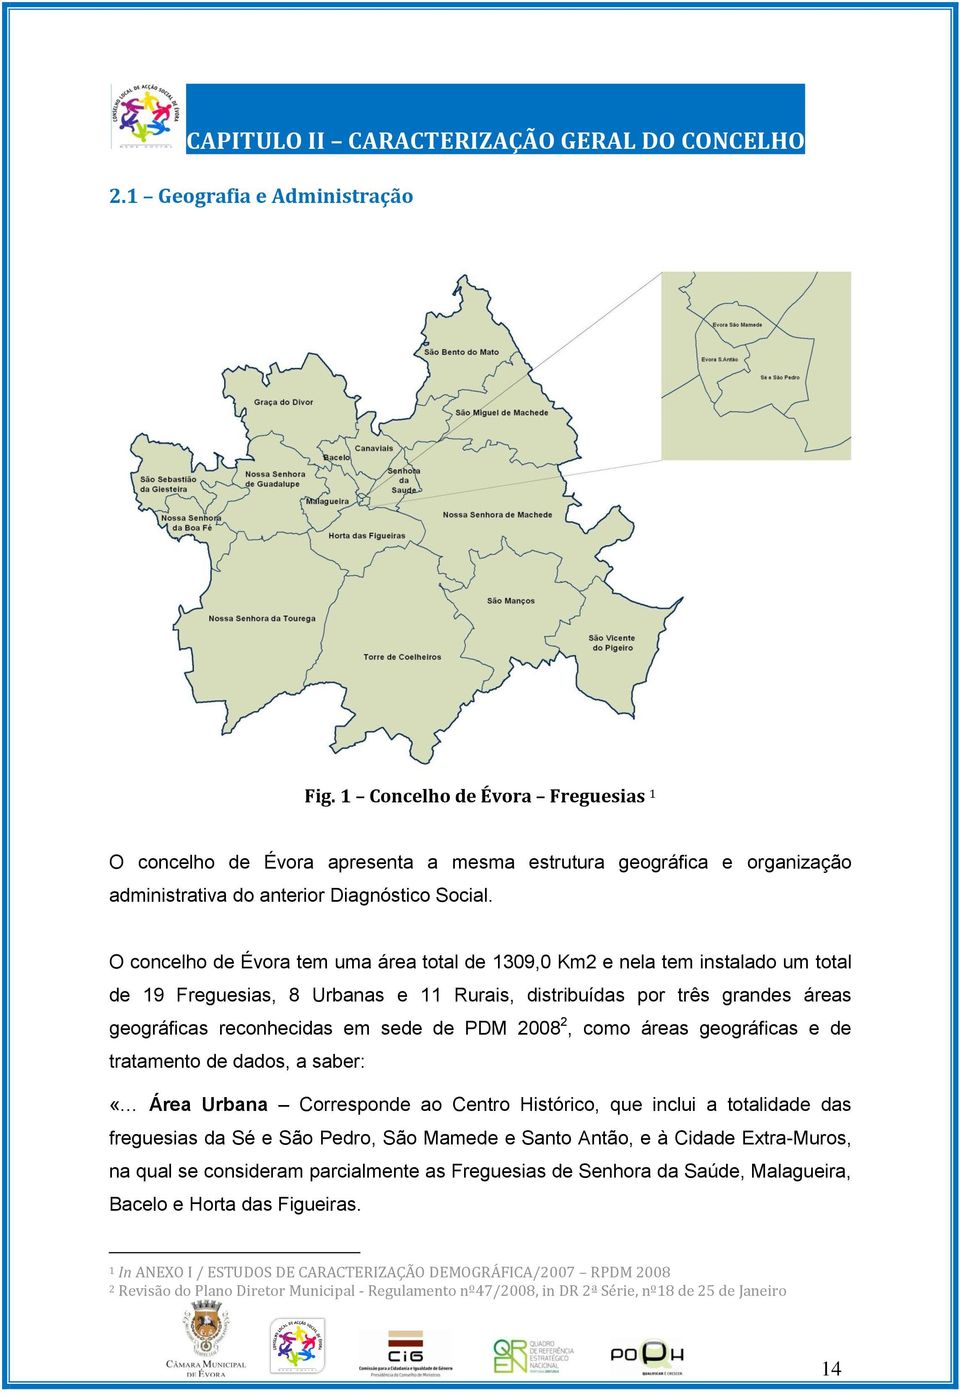 O concelho de Évora tem uma área total de 1309,0 Km2 e nela tem instalado um total de 19 Freguesias, 8 Urbanas e 11 Rurais, distribuídas por três grandes áreas geográficas reconhecidas em sede de PDM